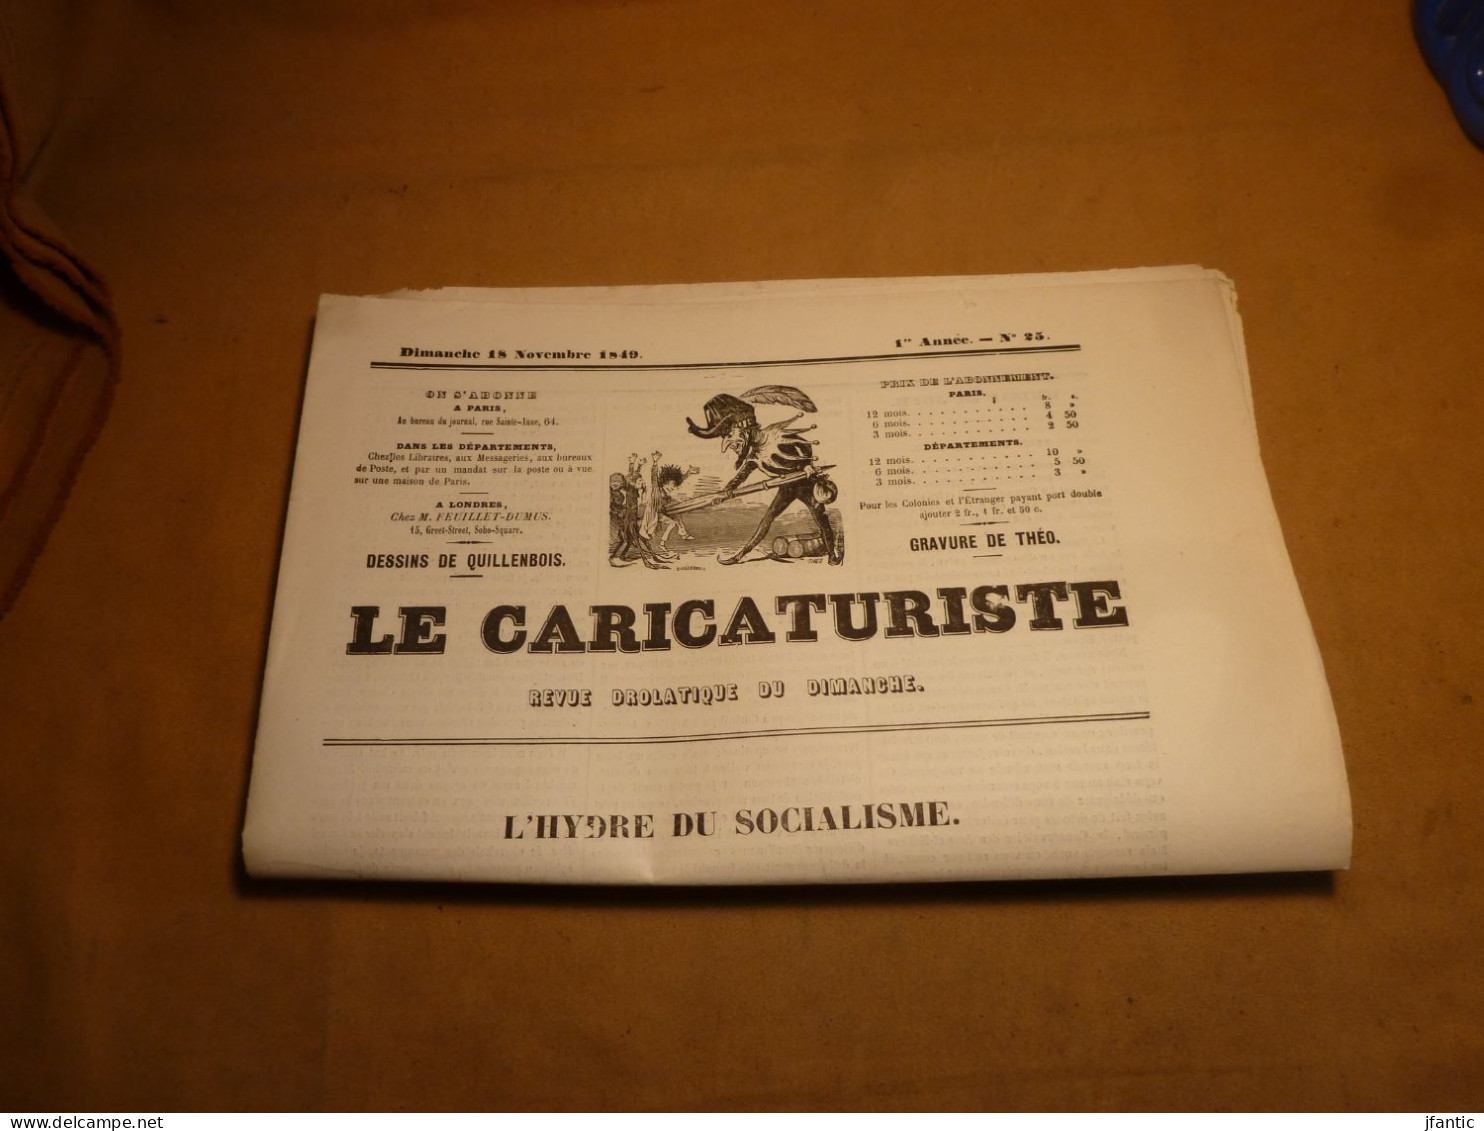 Le Caricaturiste, revue drolatique du dimanche, 1 ère année N°25, dimanche 18 novembre 1849. l'hydre du socialisme.